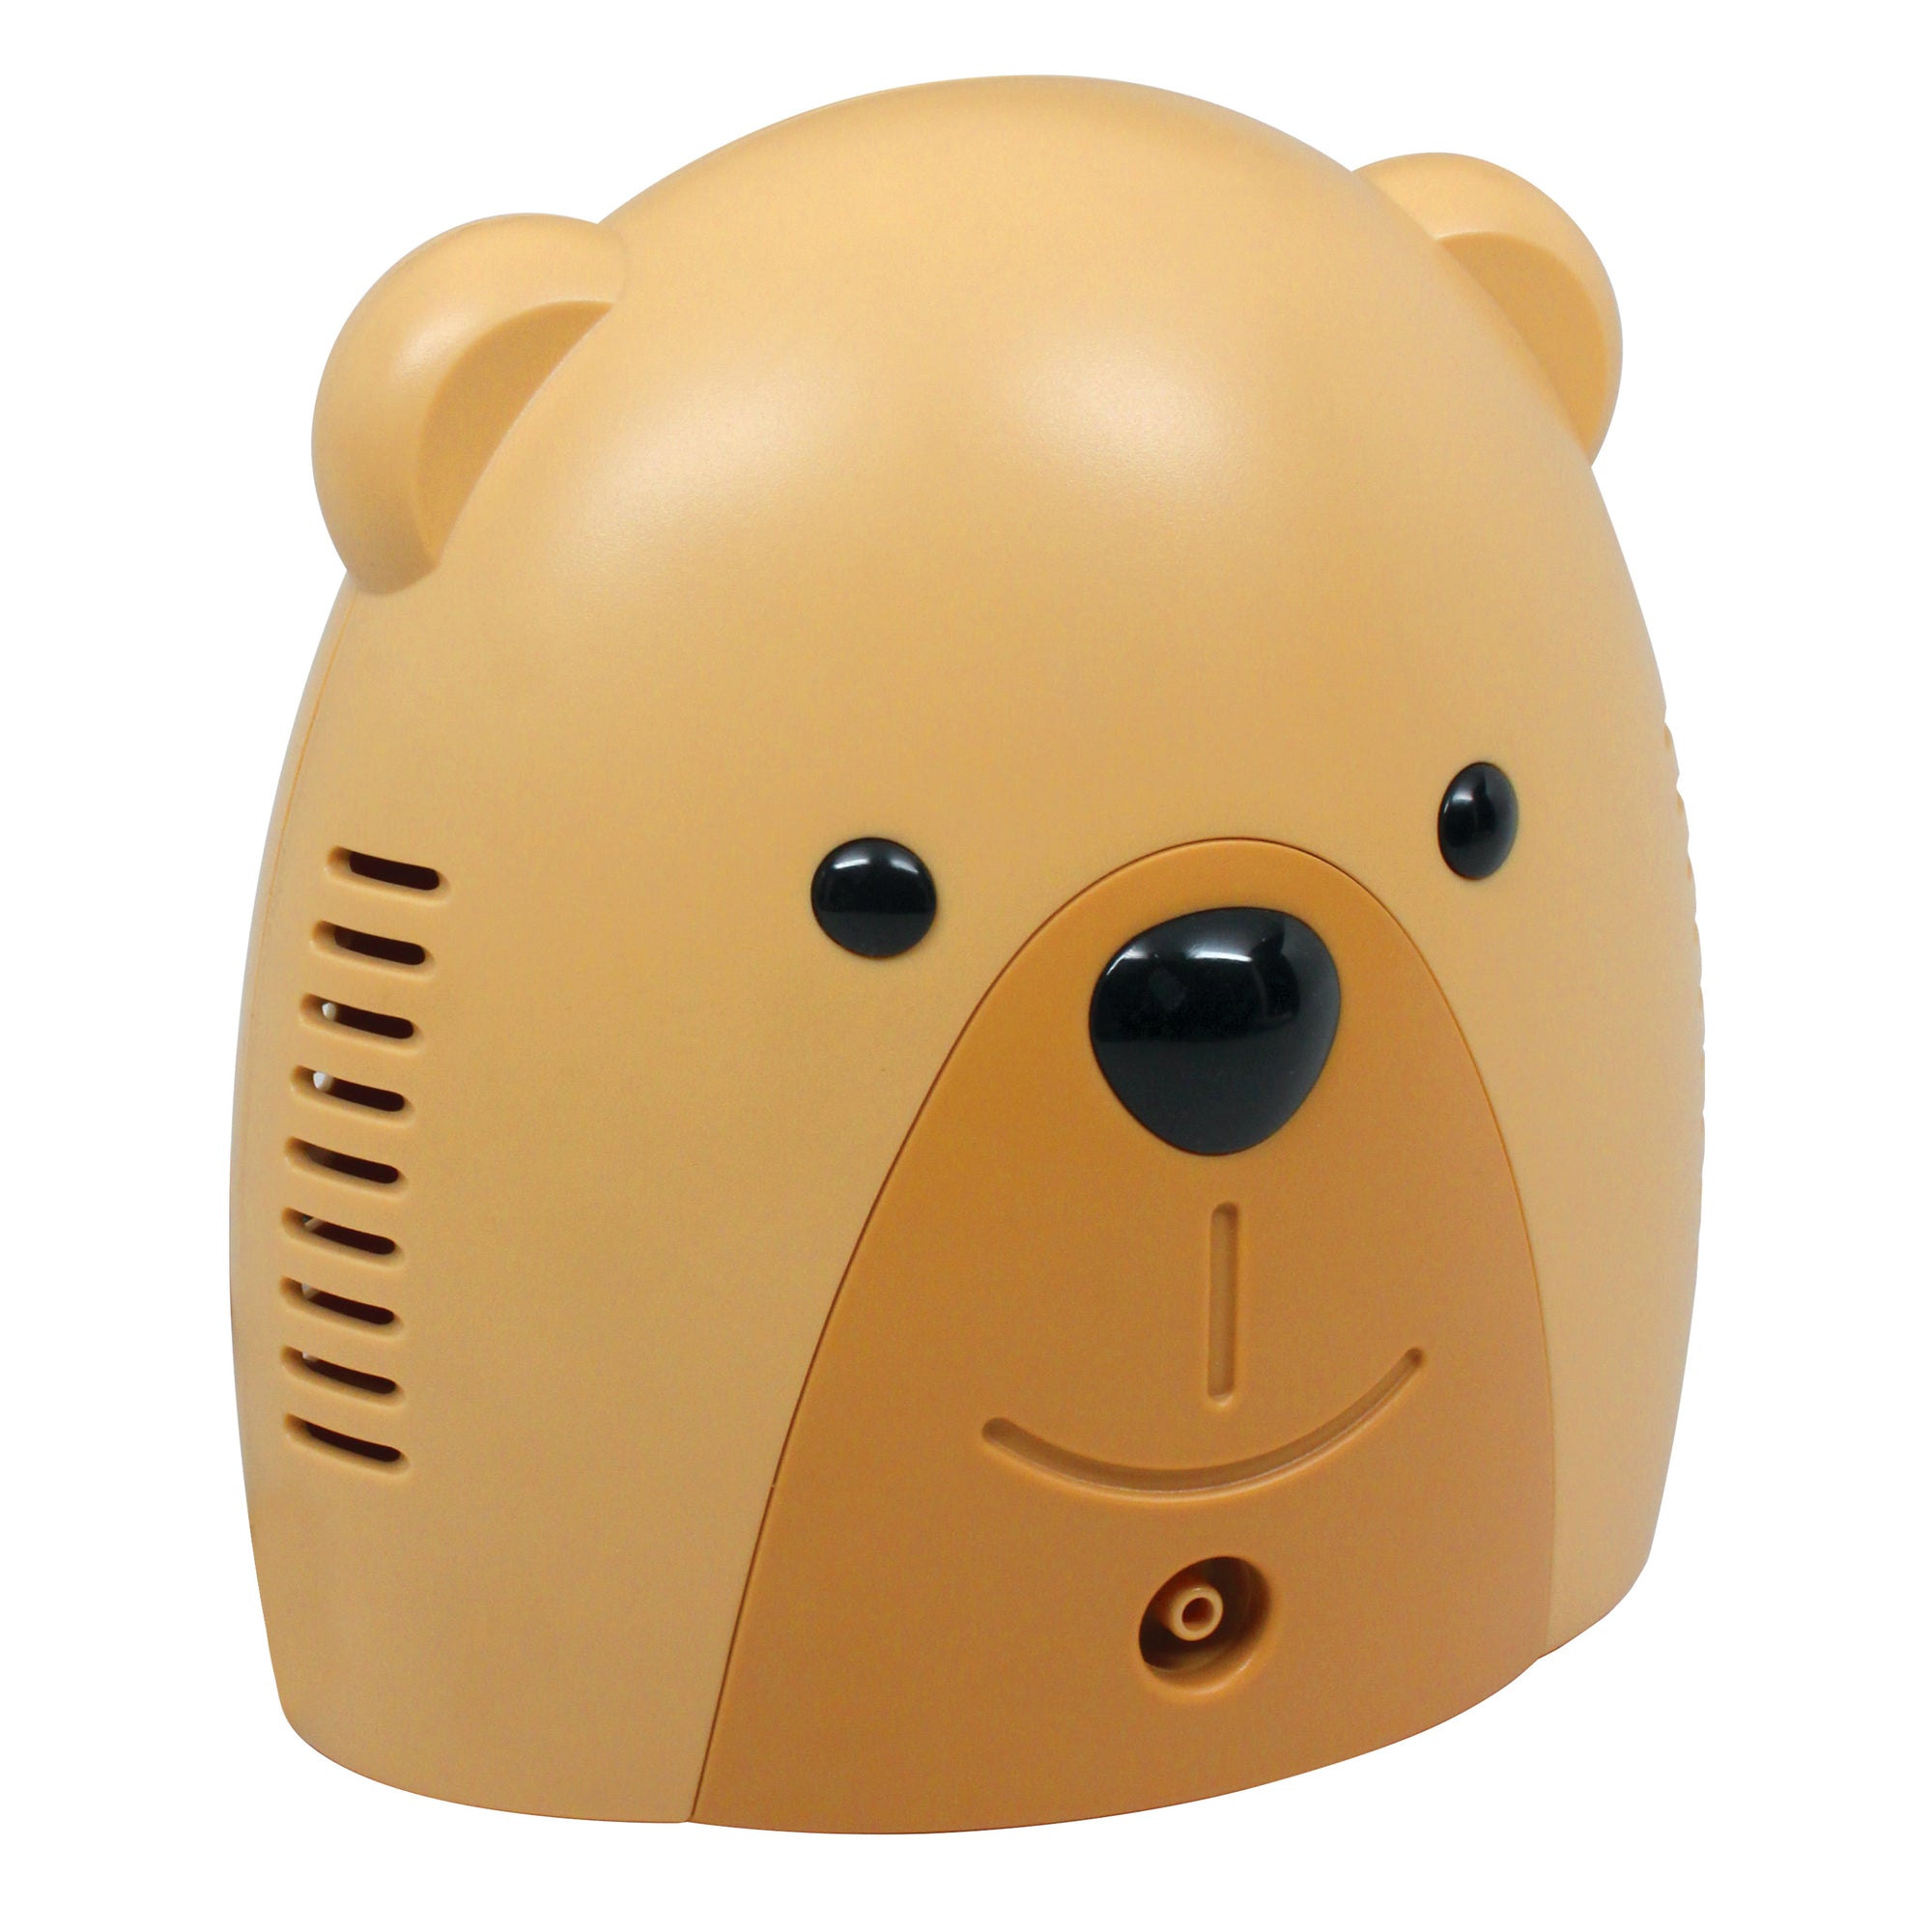 Sunny the Bear Compressor Nebulizer